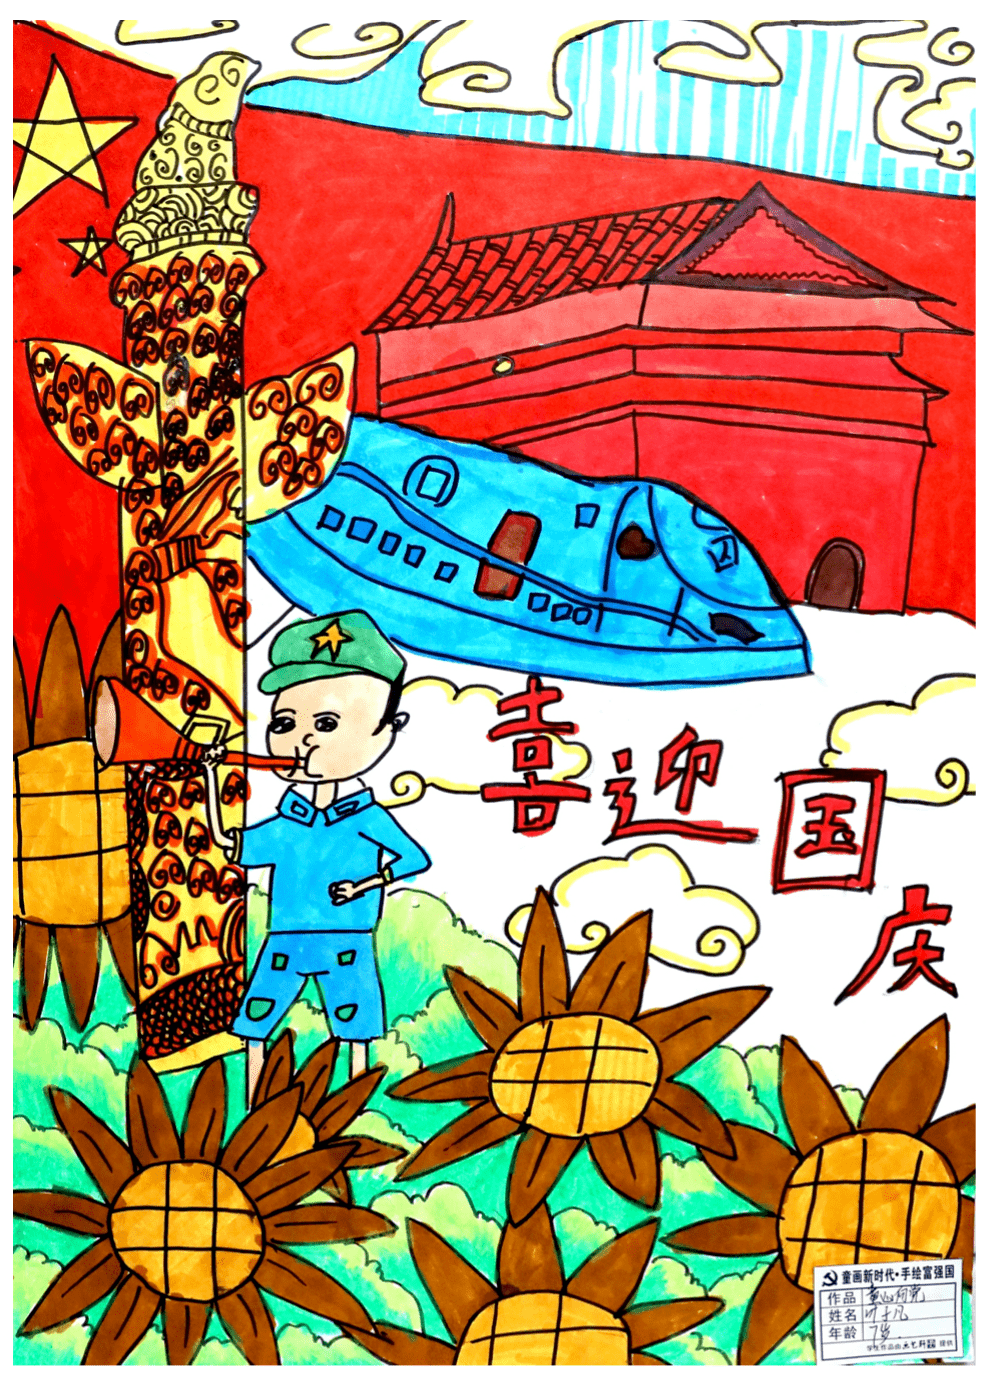 2021年新兴县童画新时代手绘富强国主题儿童画展示第一期